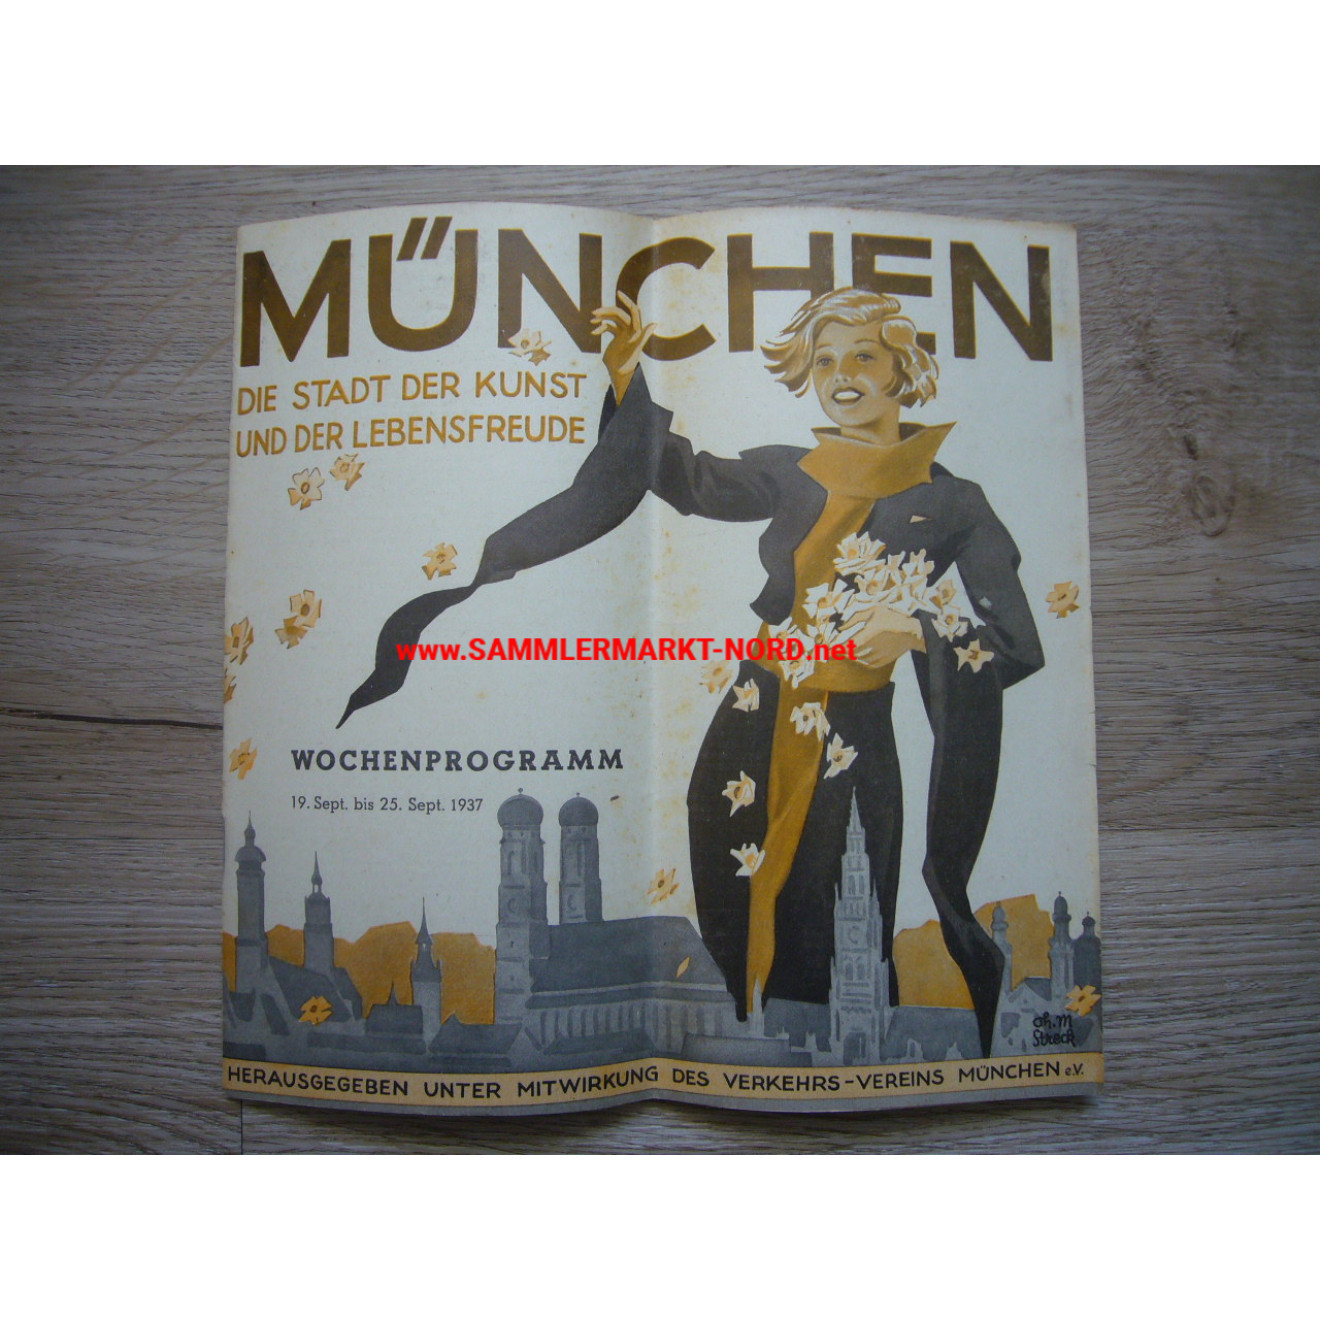 Munich - City of art and joie de vivre - Brochure 1937